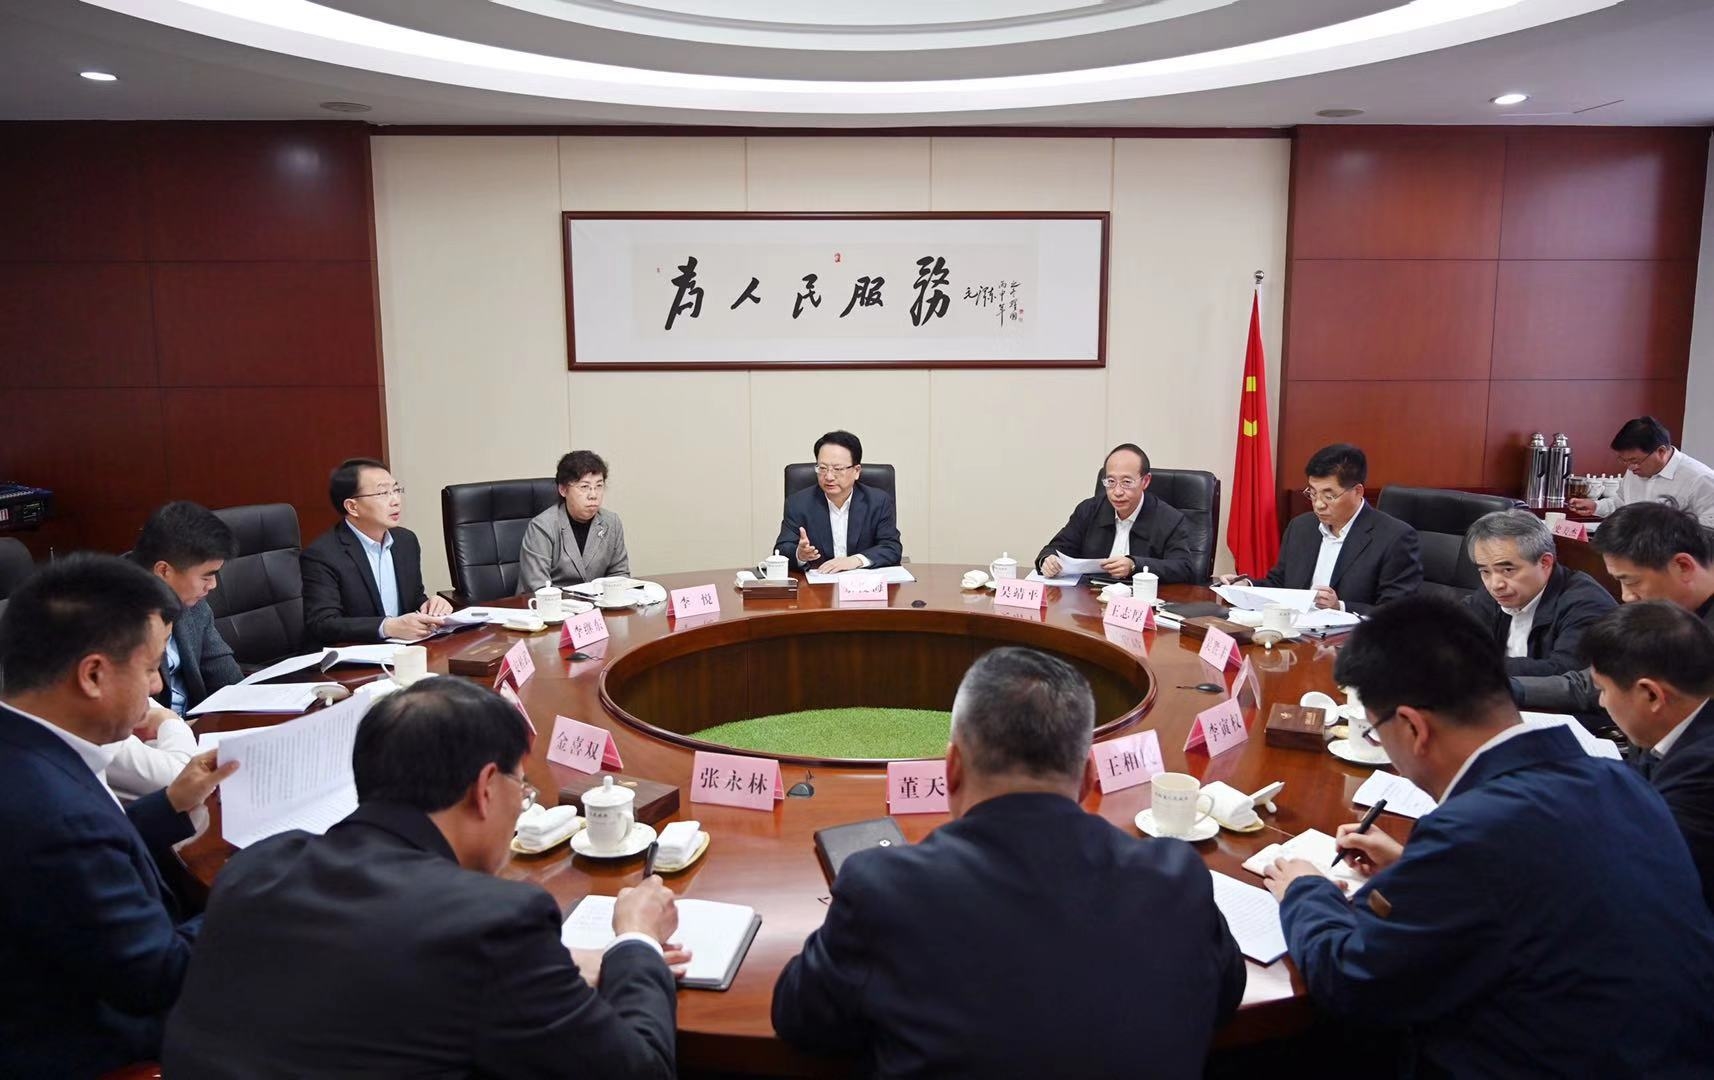 景俊海在省政府专题会议上强调 优化电力服务构筑发展新优势 推动农村兴产业降成本增效益